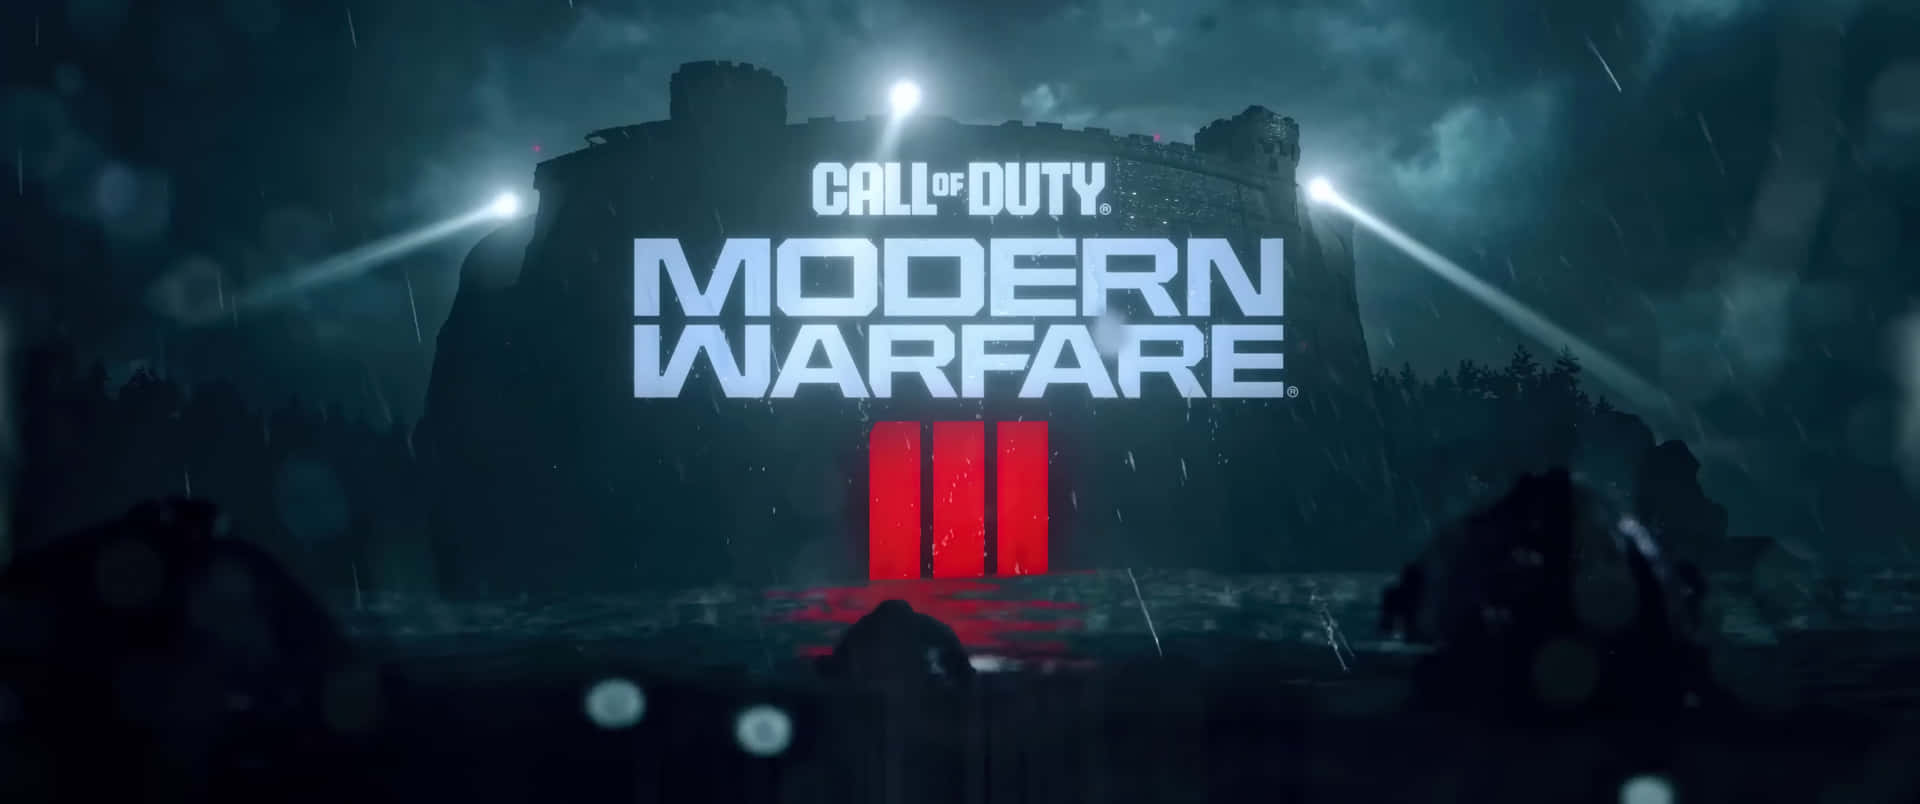 Modern Warfare3 Game Announcement Wallpaper